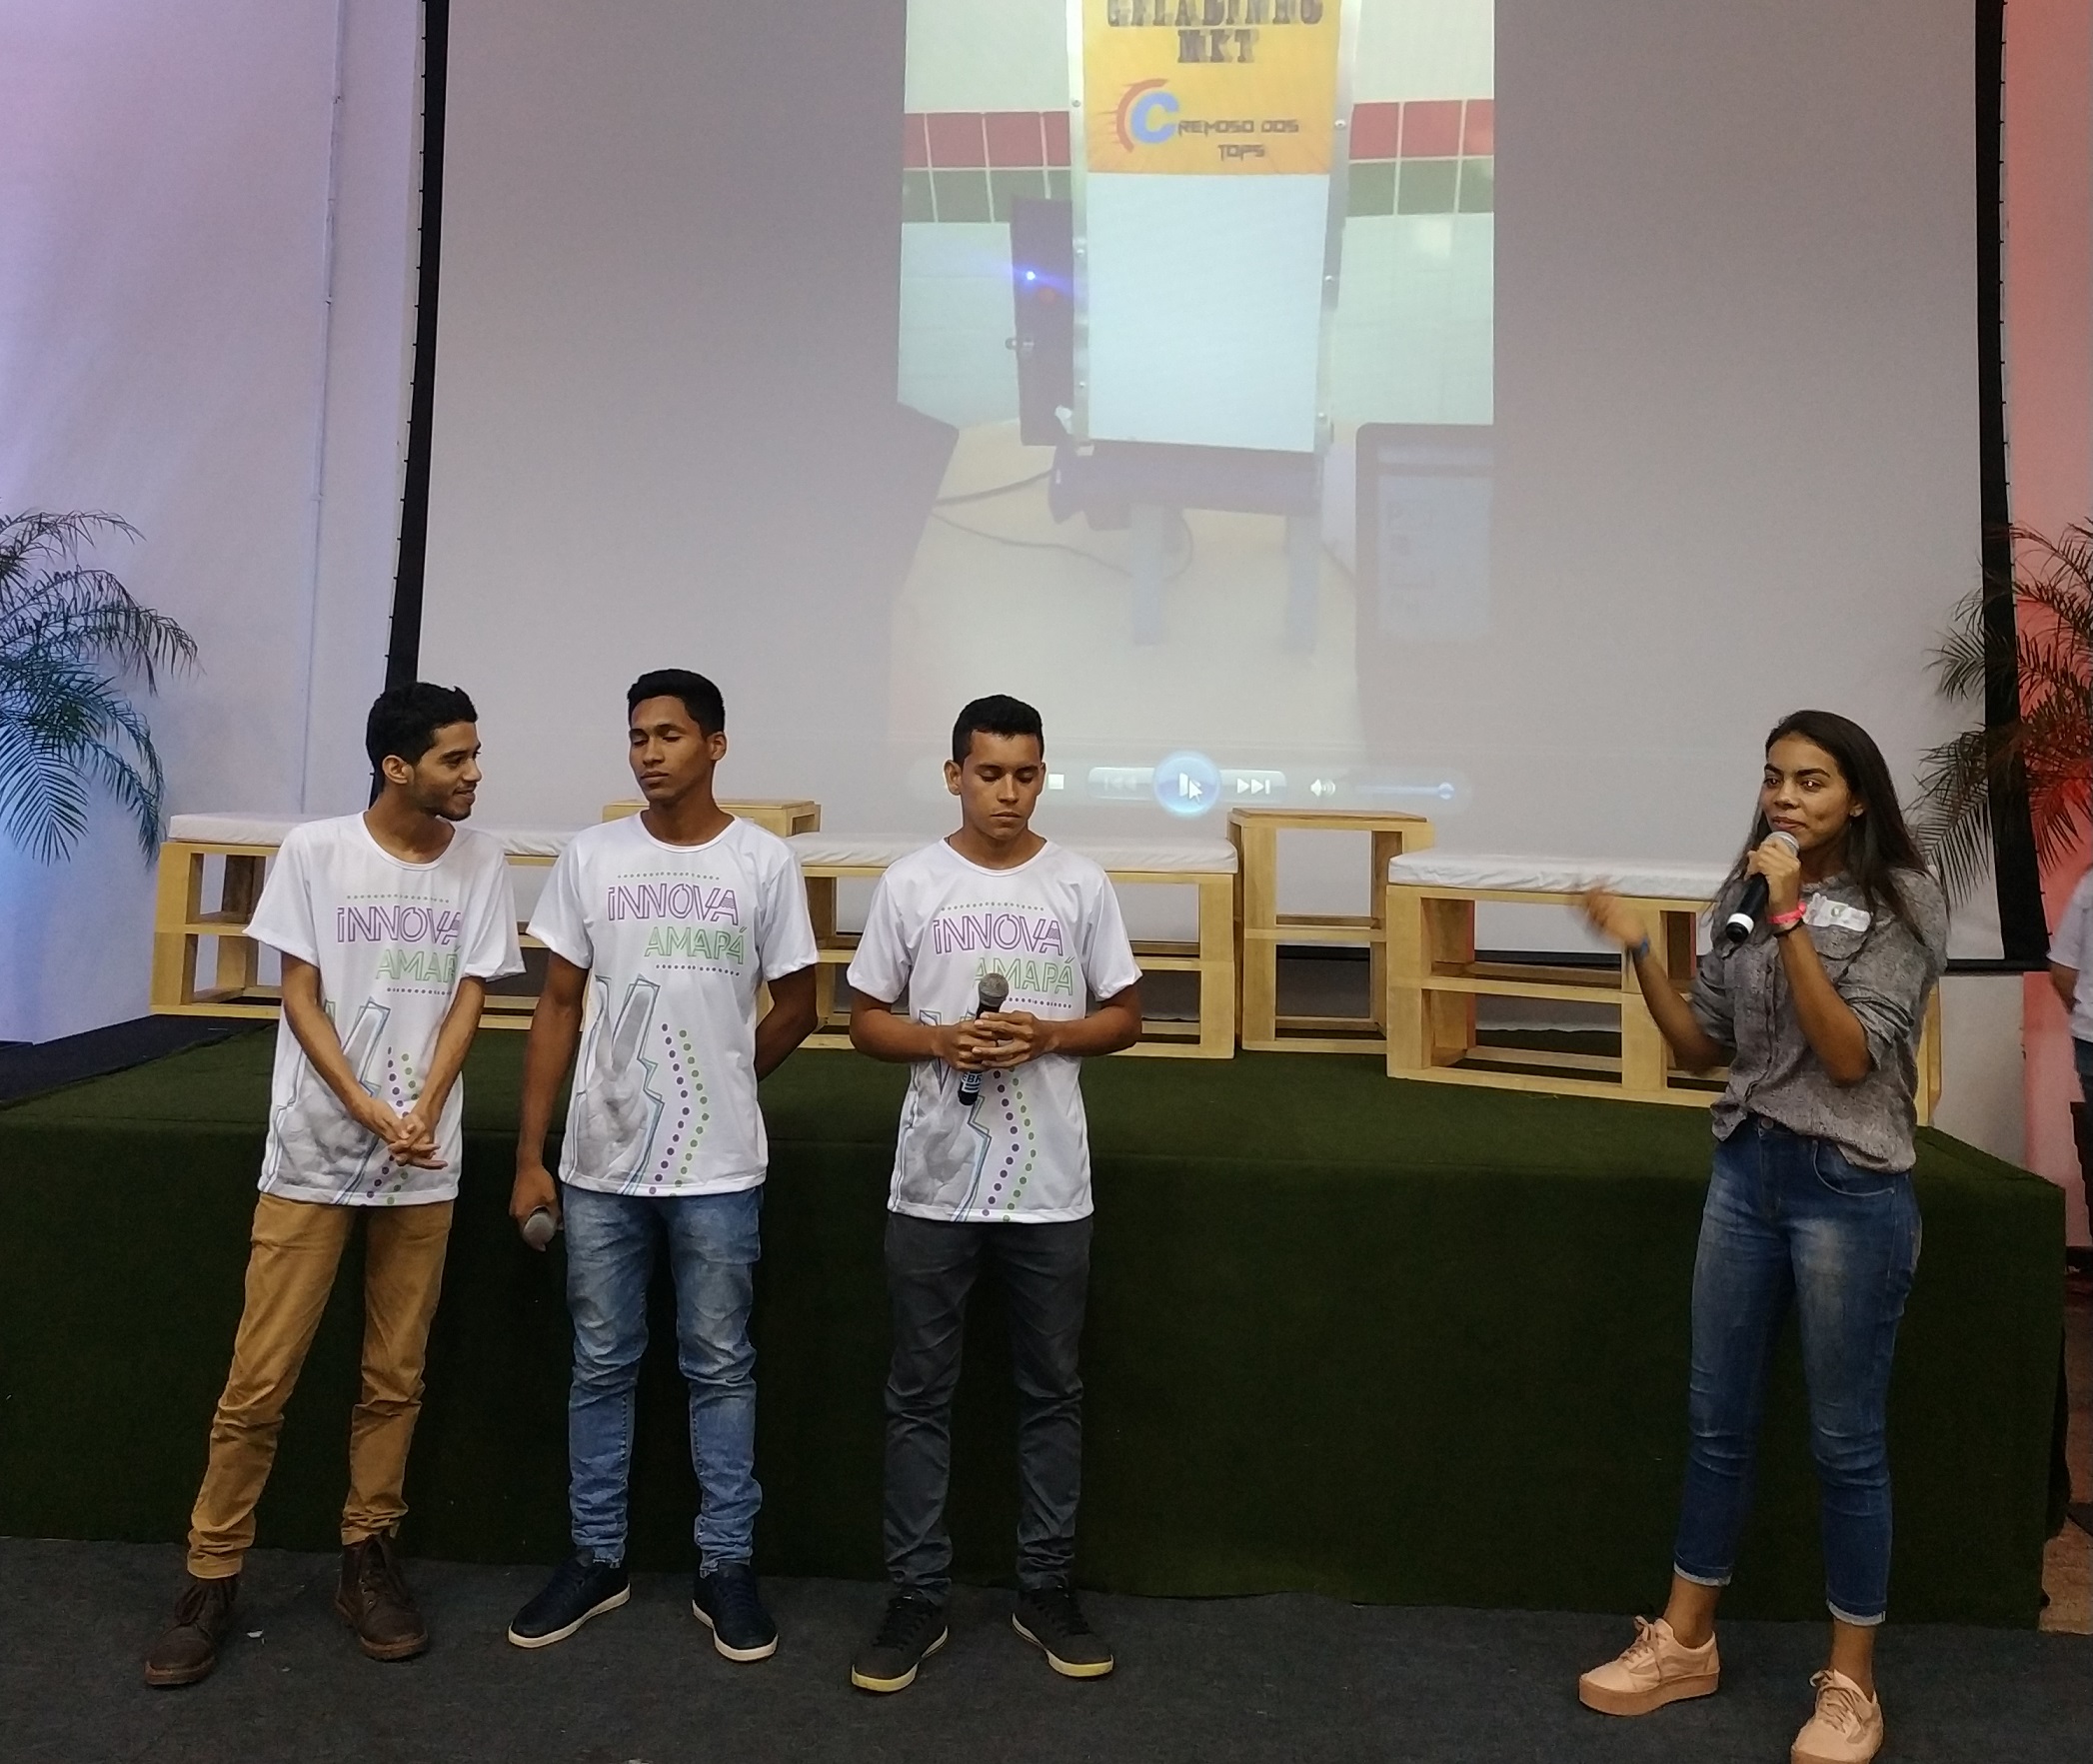 Estudantes falam aos participantes da Feira Innova Amapá sobre as atividades de robótica desenvolvidas no Ifap